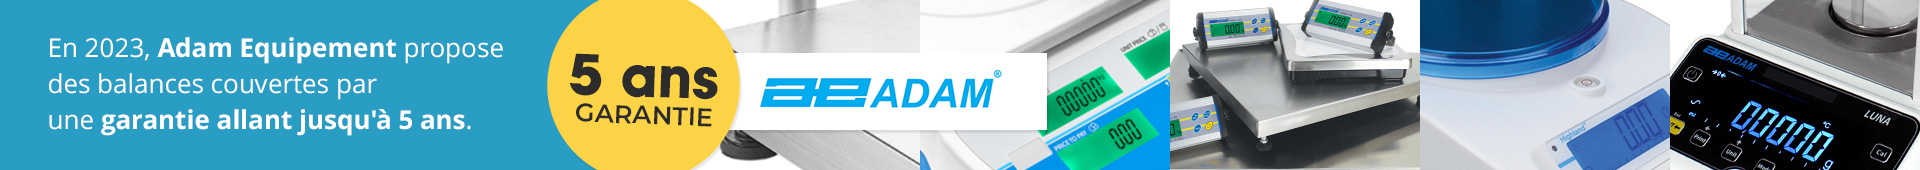 Jusqu'à 5 ans de garantie sur les produits de la marque Adam Equipment